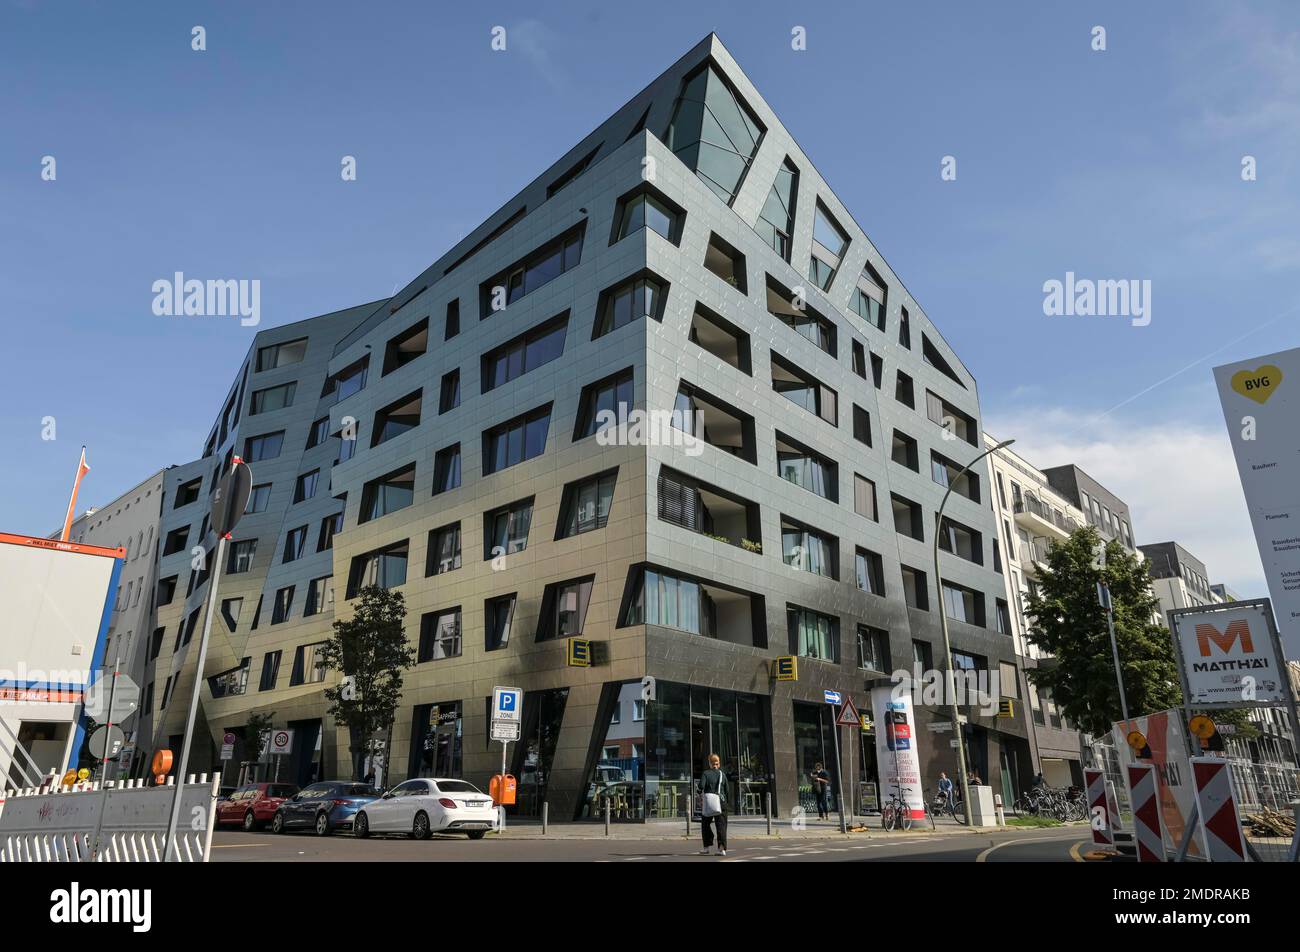 Bâtiment résidentiel Sapphire par Daniel Libeskind, Chausseestrasse, Mitte, Berlin, Allemagne Banque D'Images